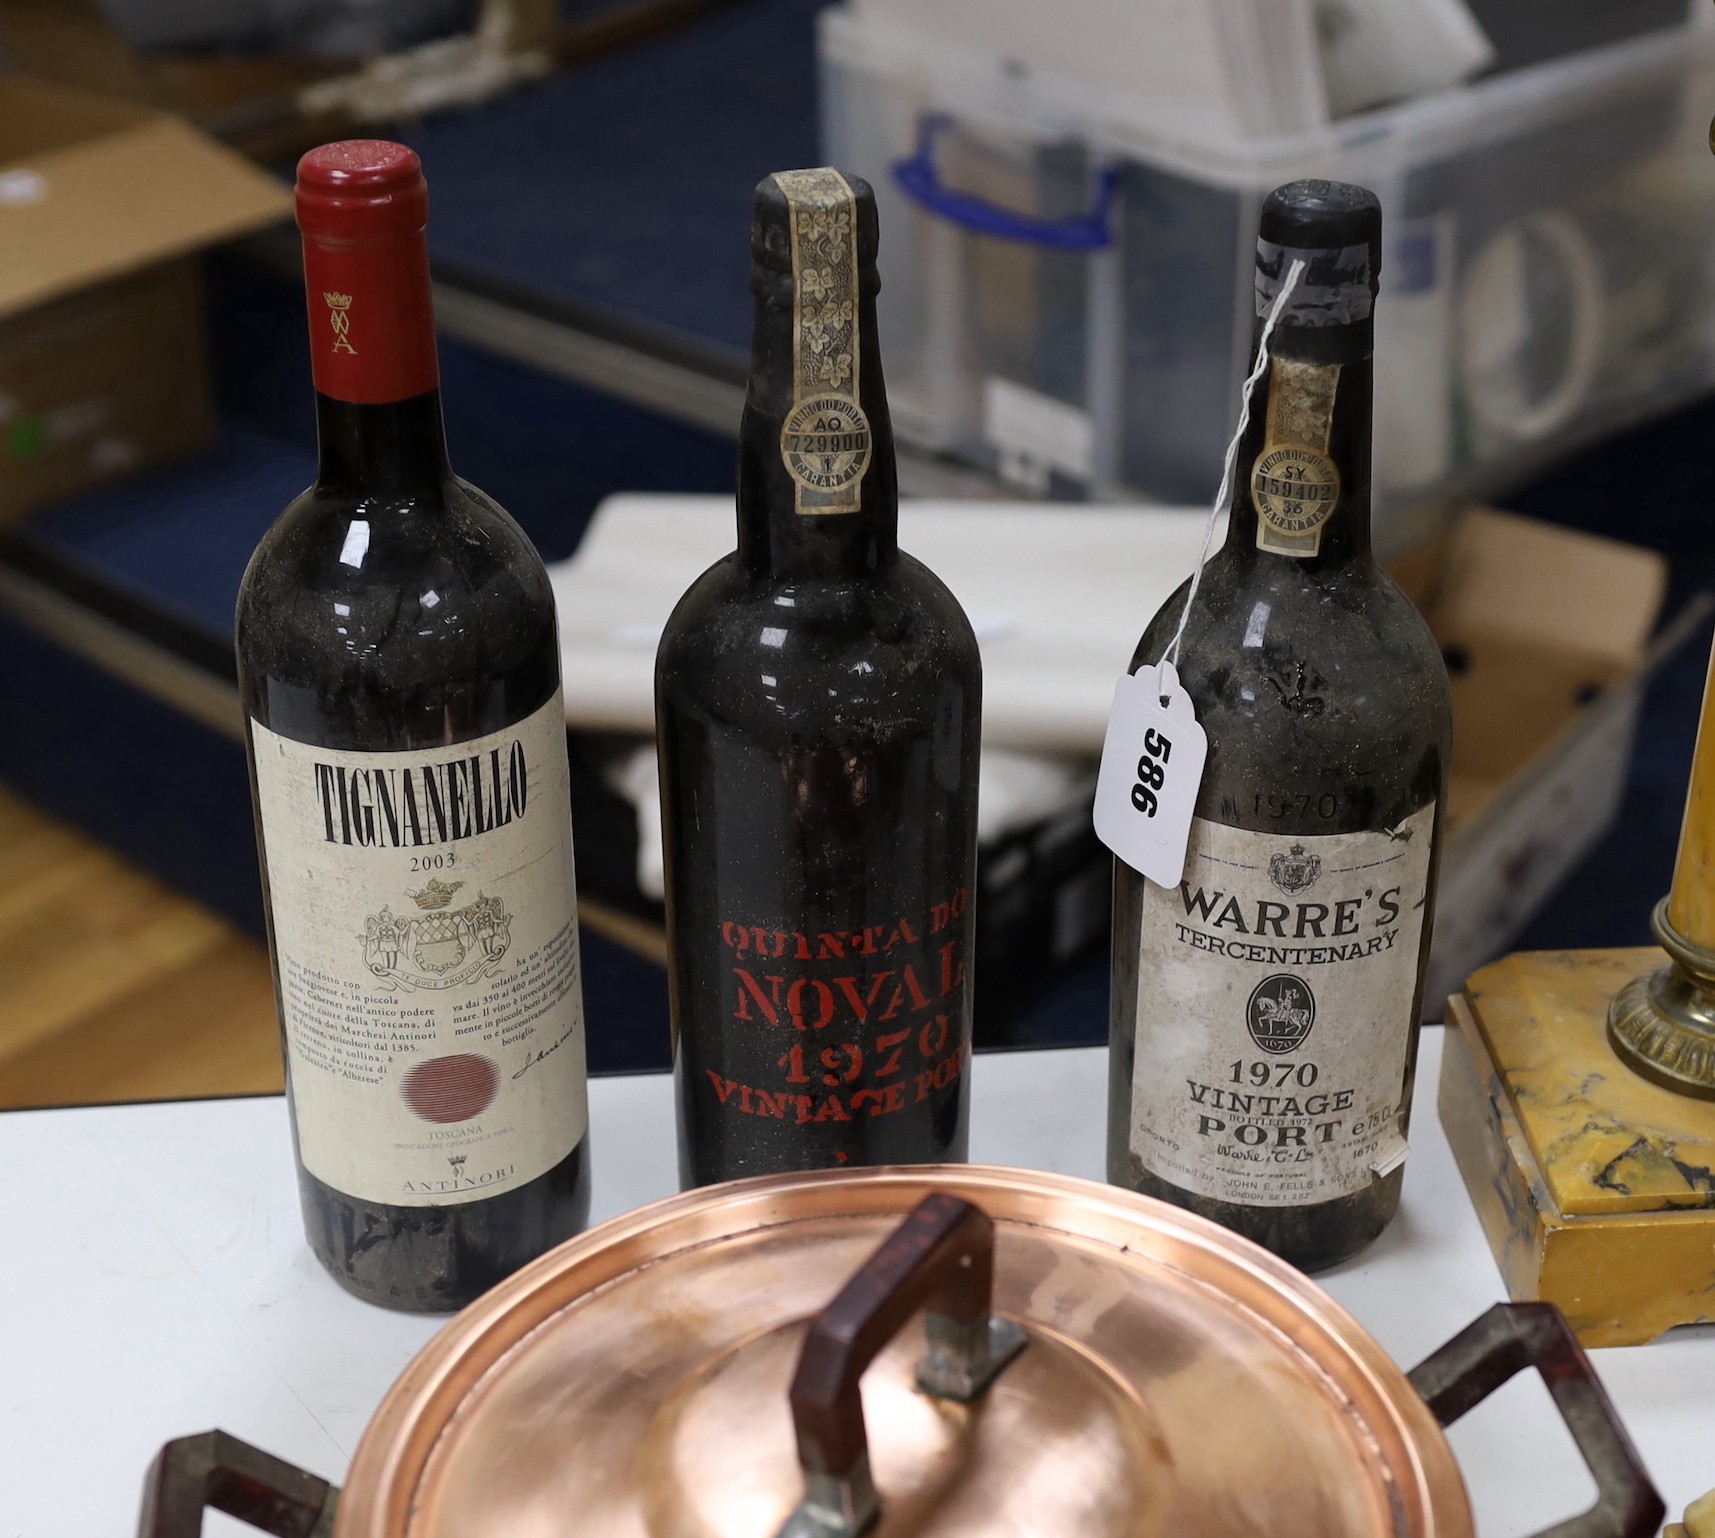 One bottle of Warres 1970 Vintage Port, one bottle of Quinta Do Noval 1970 Vintage Port and one bottle of Tignanello, 2003 red wine.